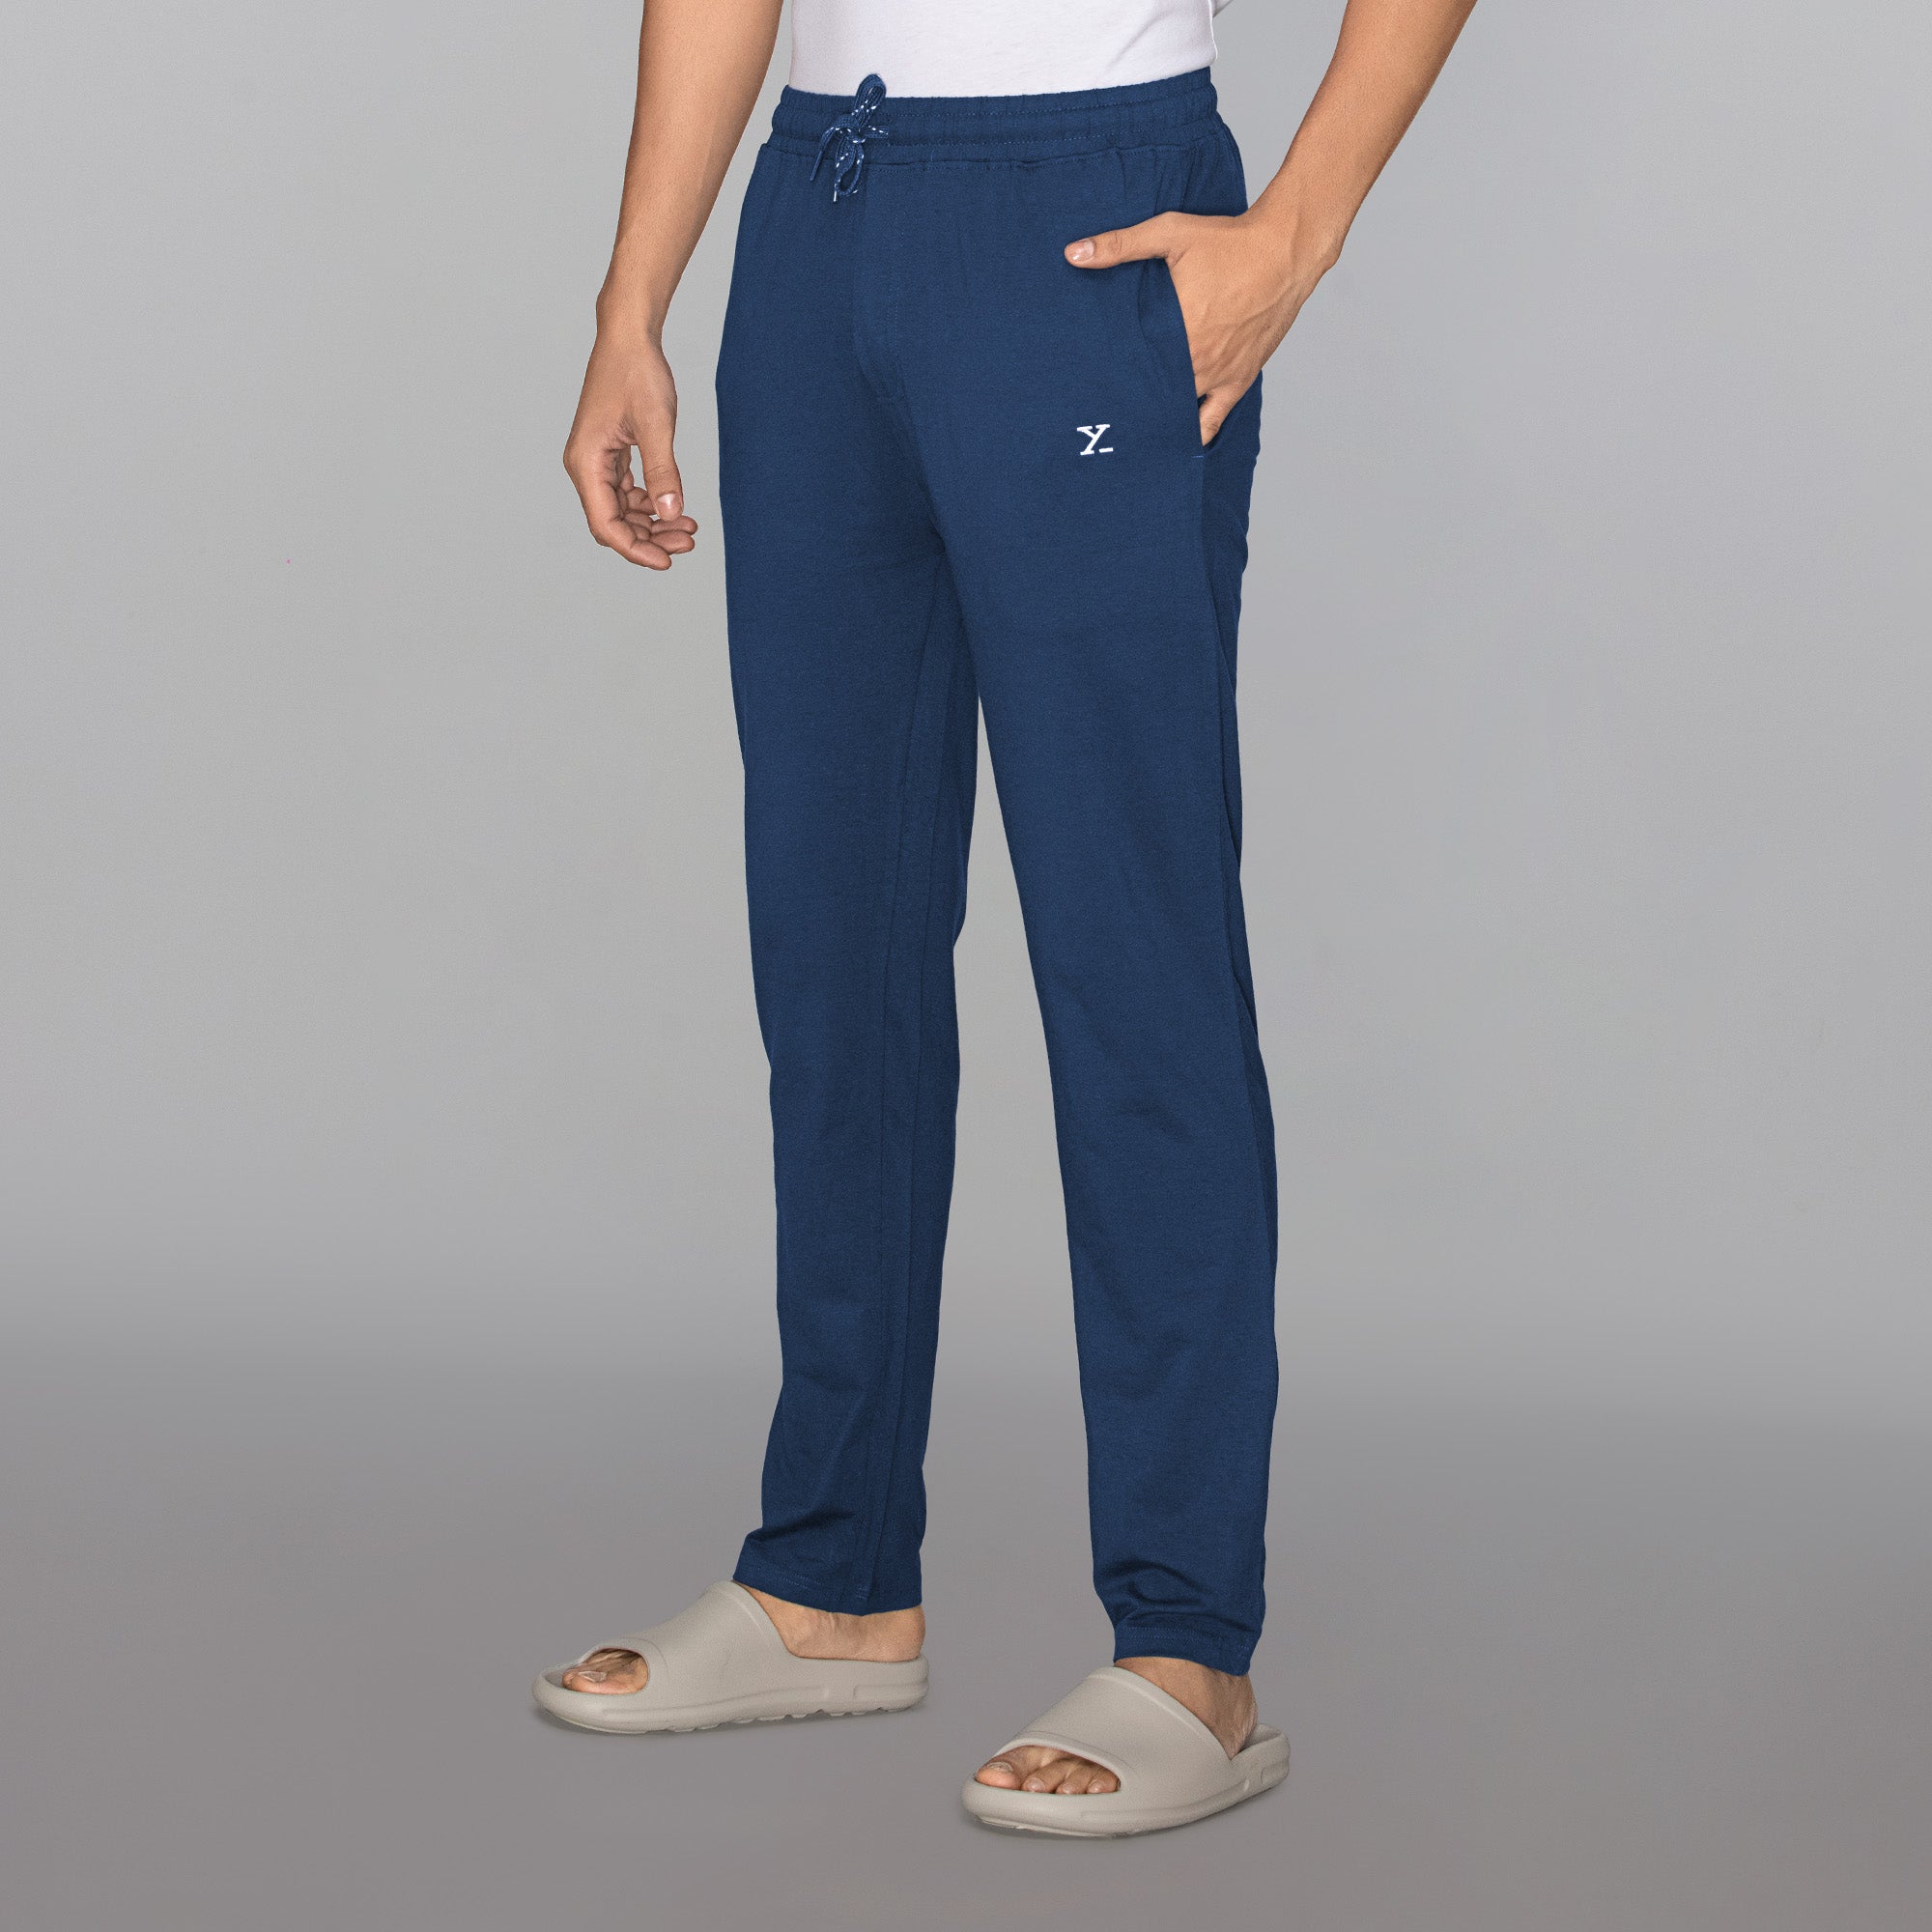 Ace Modal-Cotton Lounge Pants For Men Estate Blue - XYXX Mens Apparels